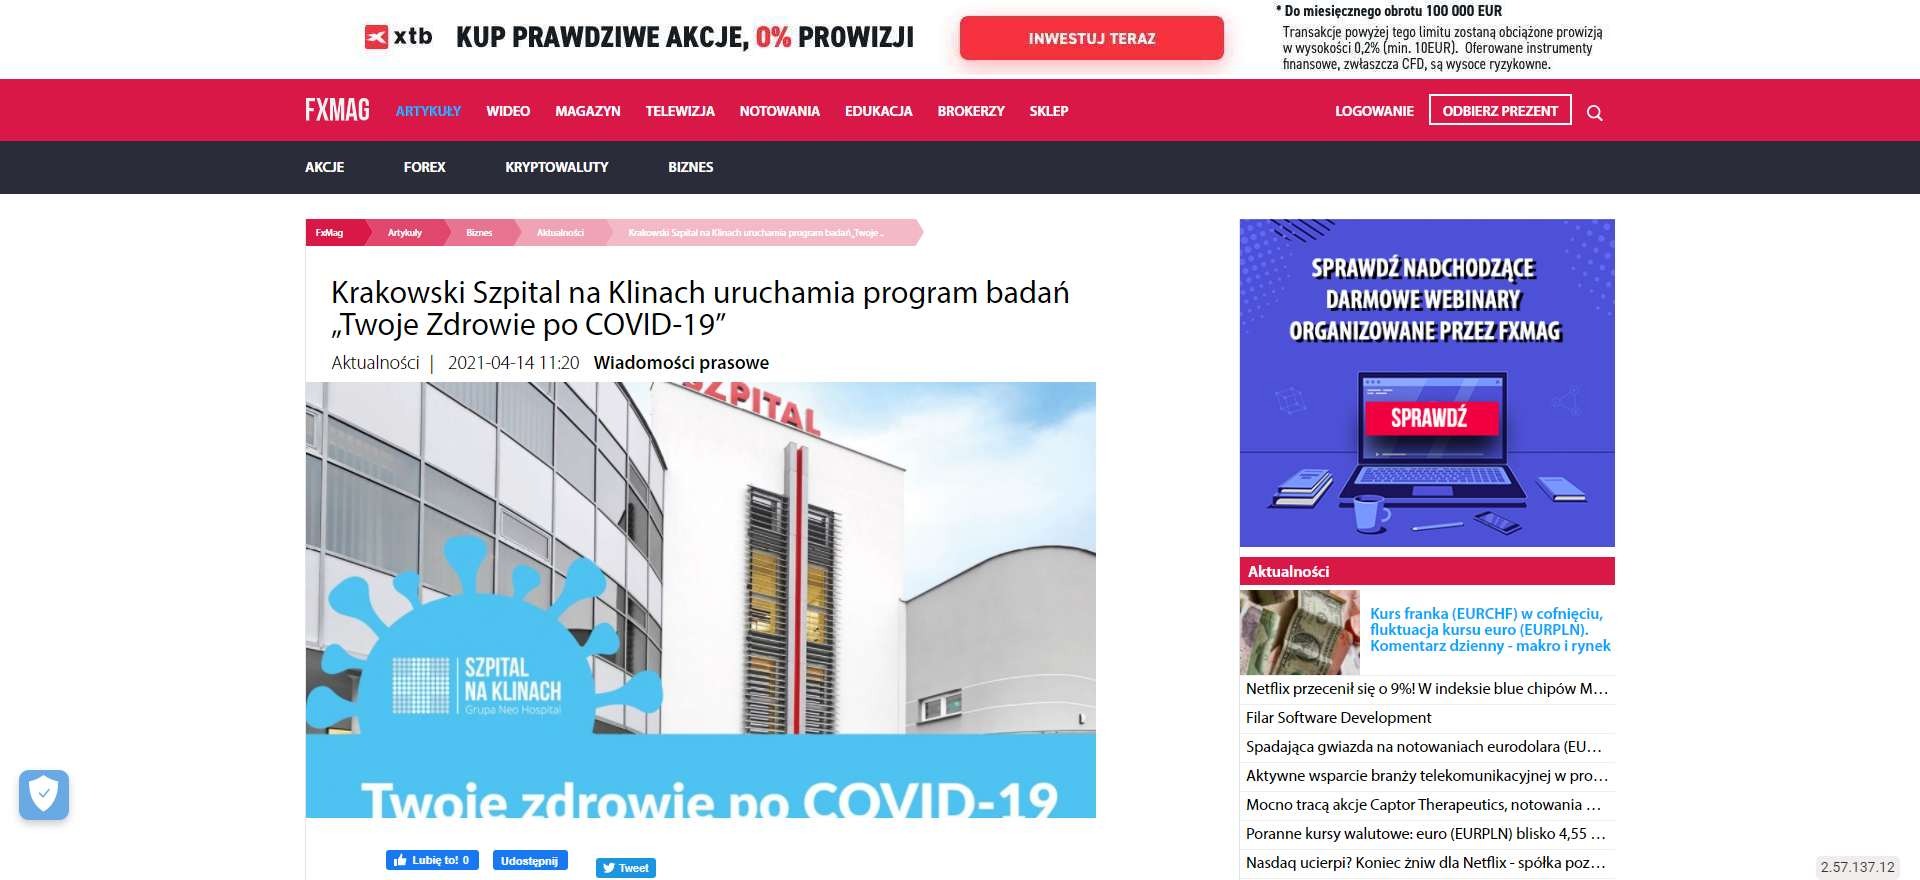 krakowski szpital na klinach uruchamia program badan twoje zdrowie po covid